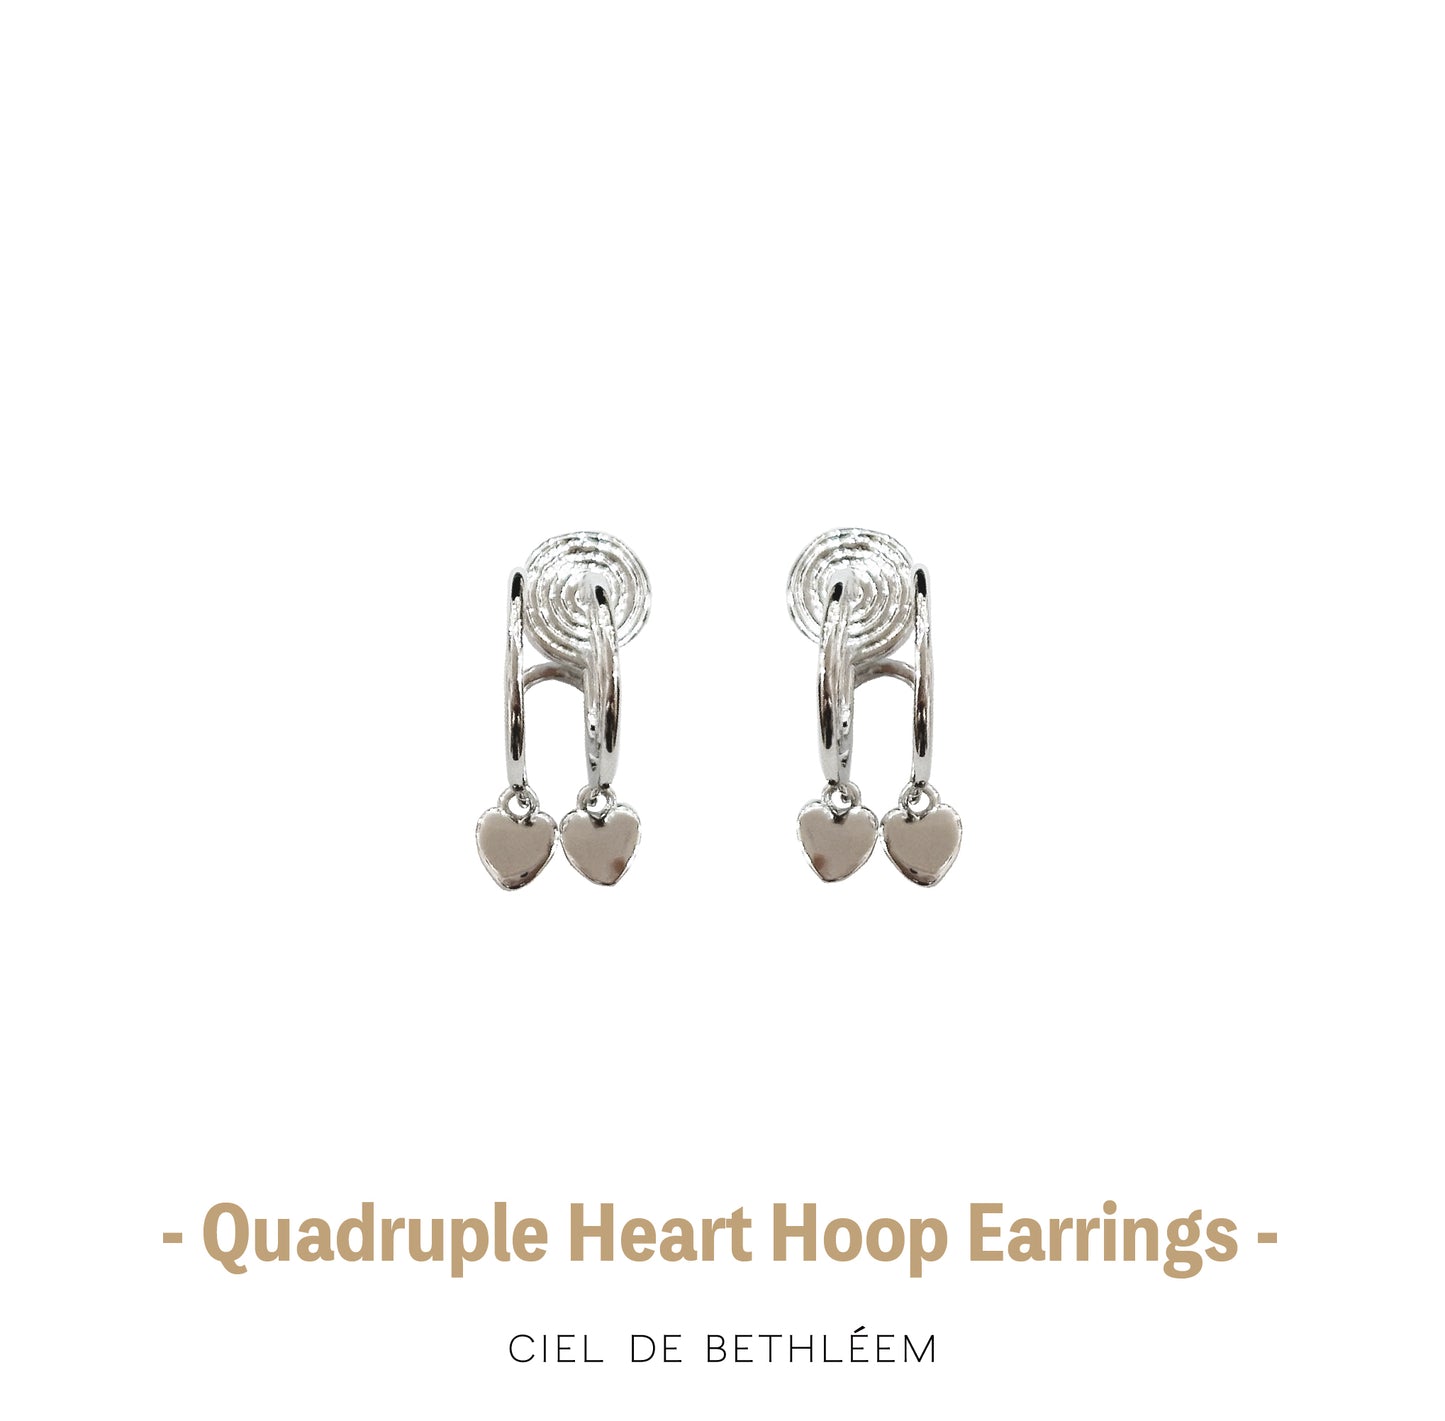 Quadruple Heart Hoop Earrings